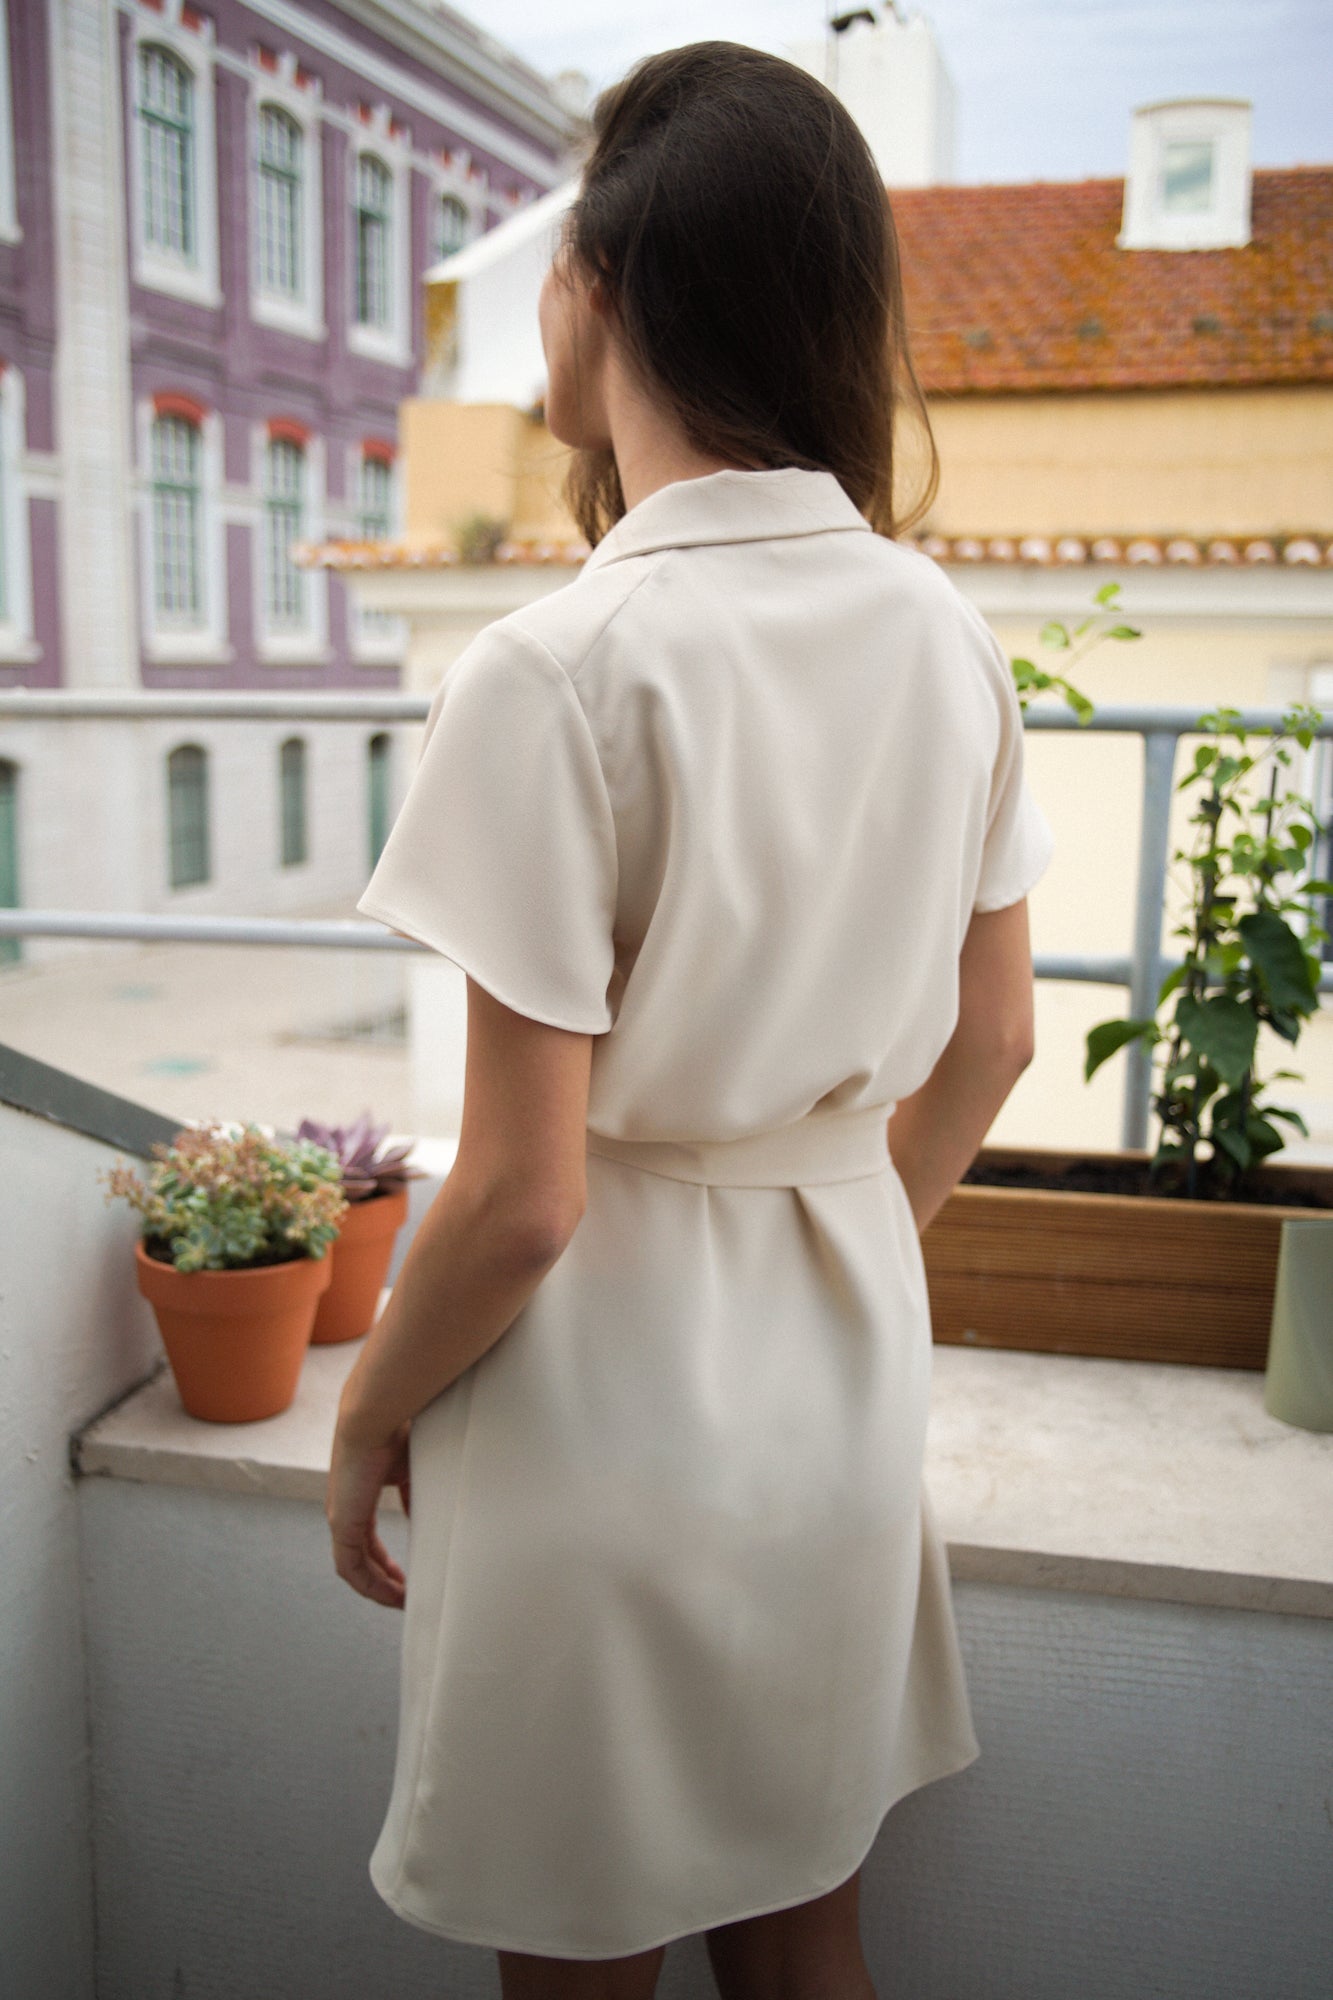 Femme de dos, sur un balcon d'appartement, portant une robe courte crème/blanc cassé. La robe possède des manches courtes simples et fluides, et un col. Elle est cintrée à la taille grâce à une ceinture en tissu.